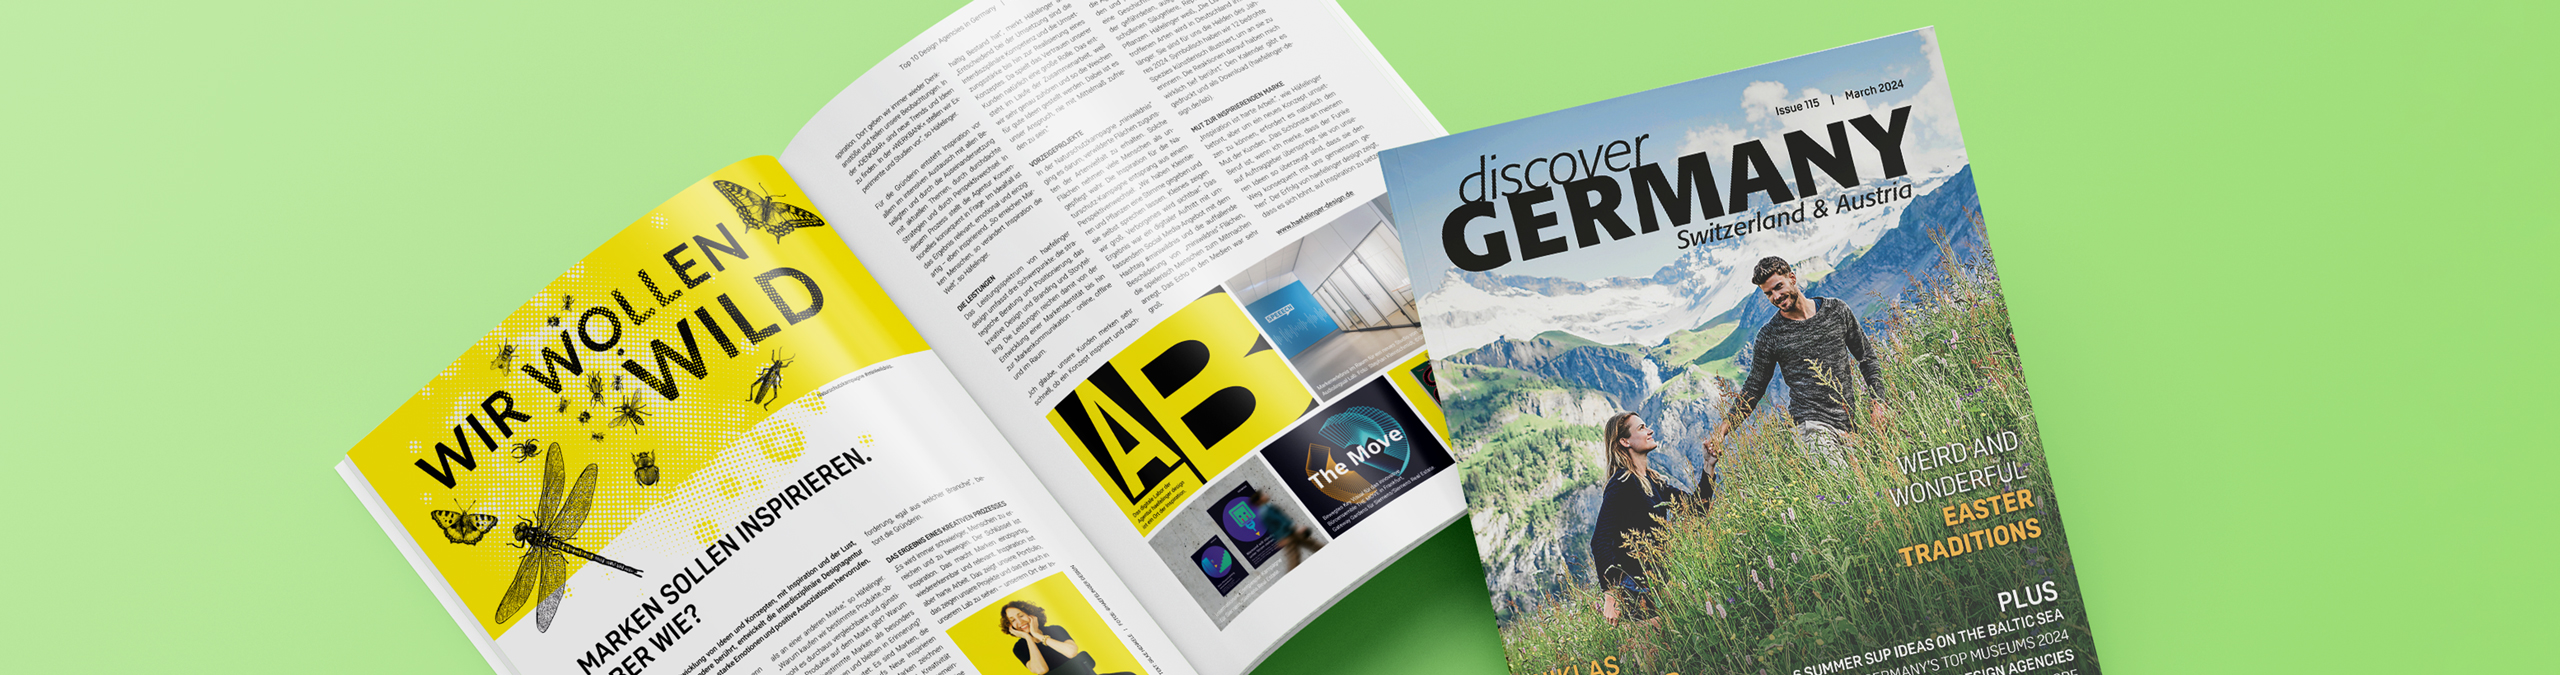 Cover und Artikel über Haefelinger design in der Discovery Germany